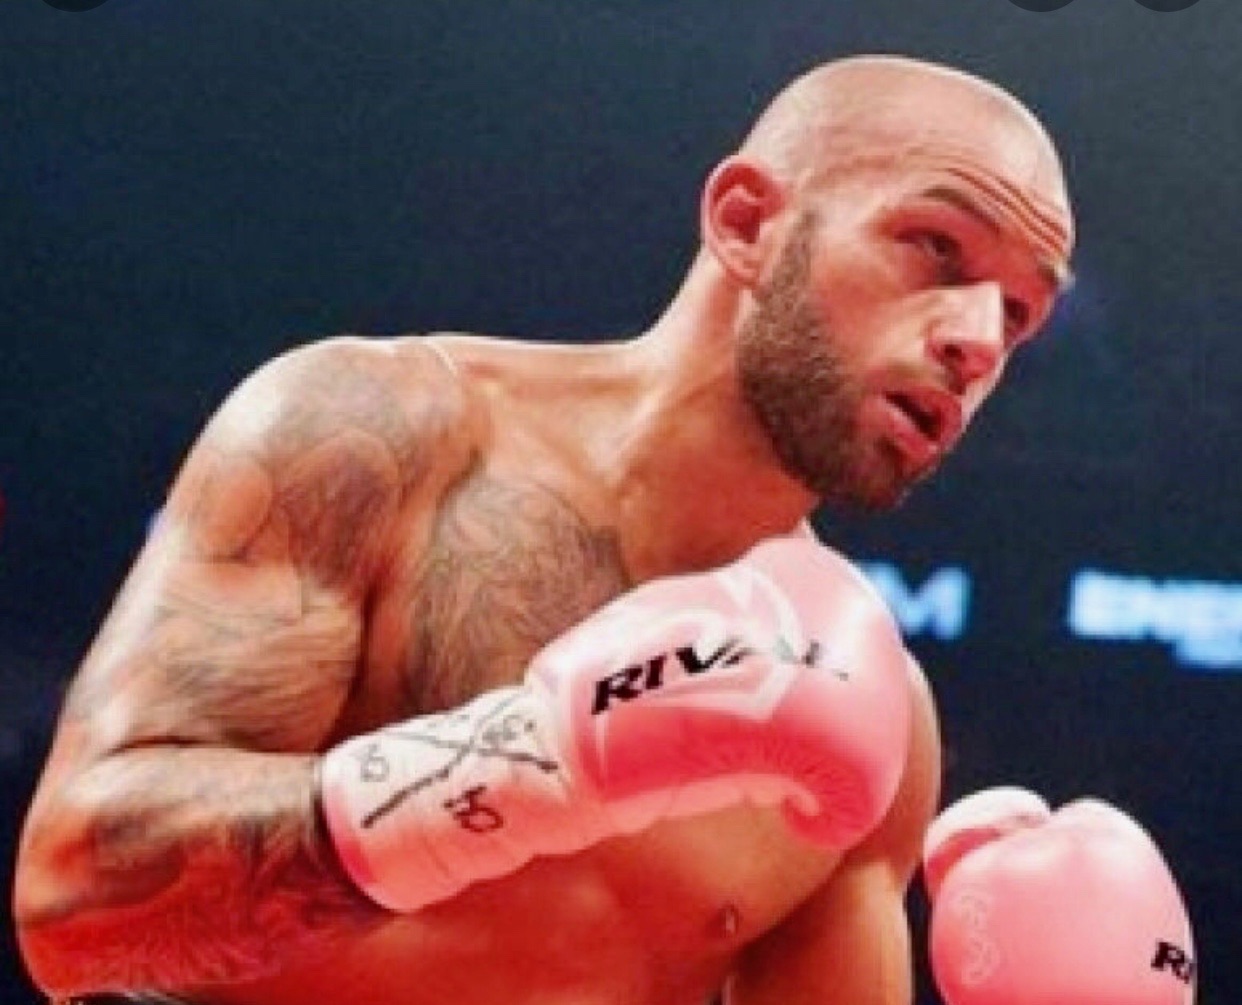 Une image d'un boxeur portant des gants de boxe roses mettant en valeur La boxe au Québec.